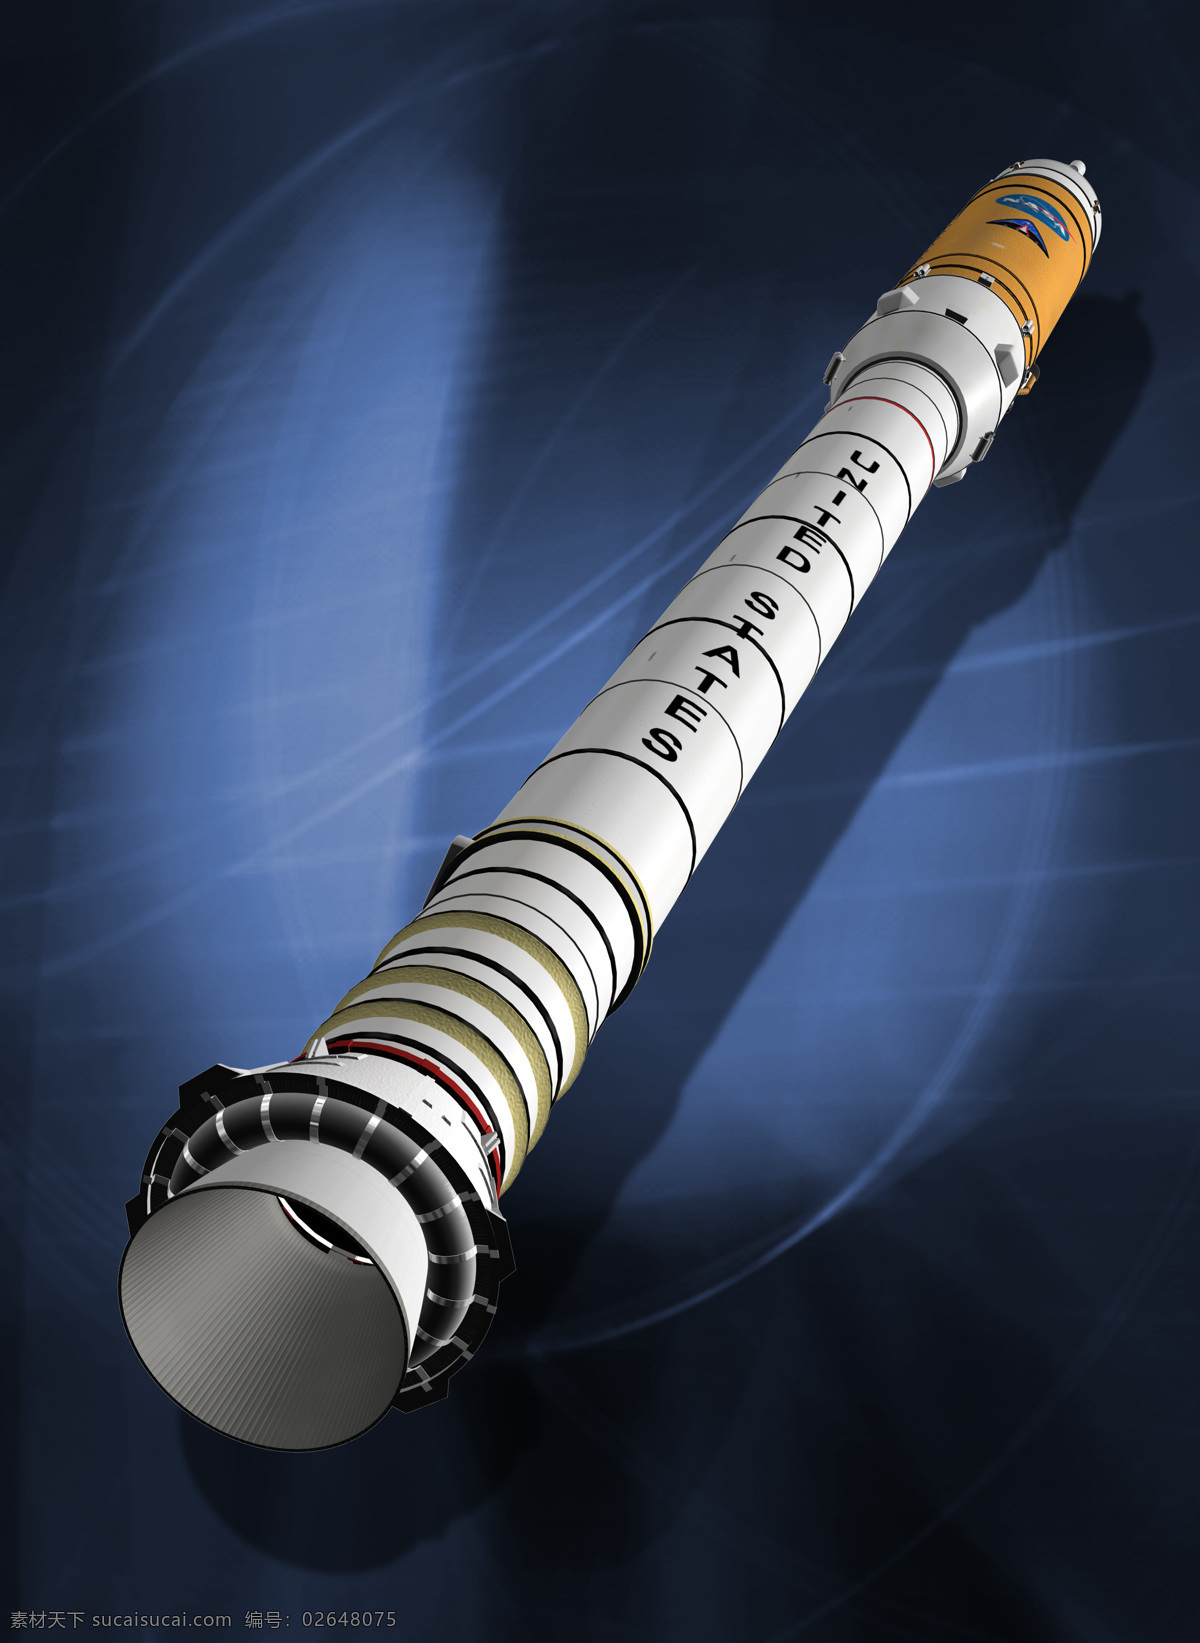 美国 载人 航天 模拟 登月 火箭 科学研究 现代科技 载人航天 飞行器 模拟登月 矢量图